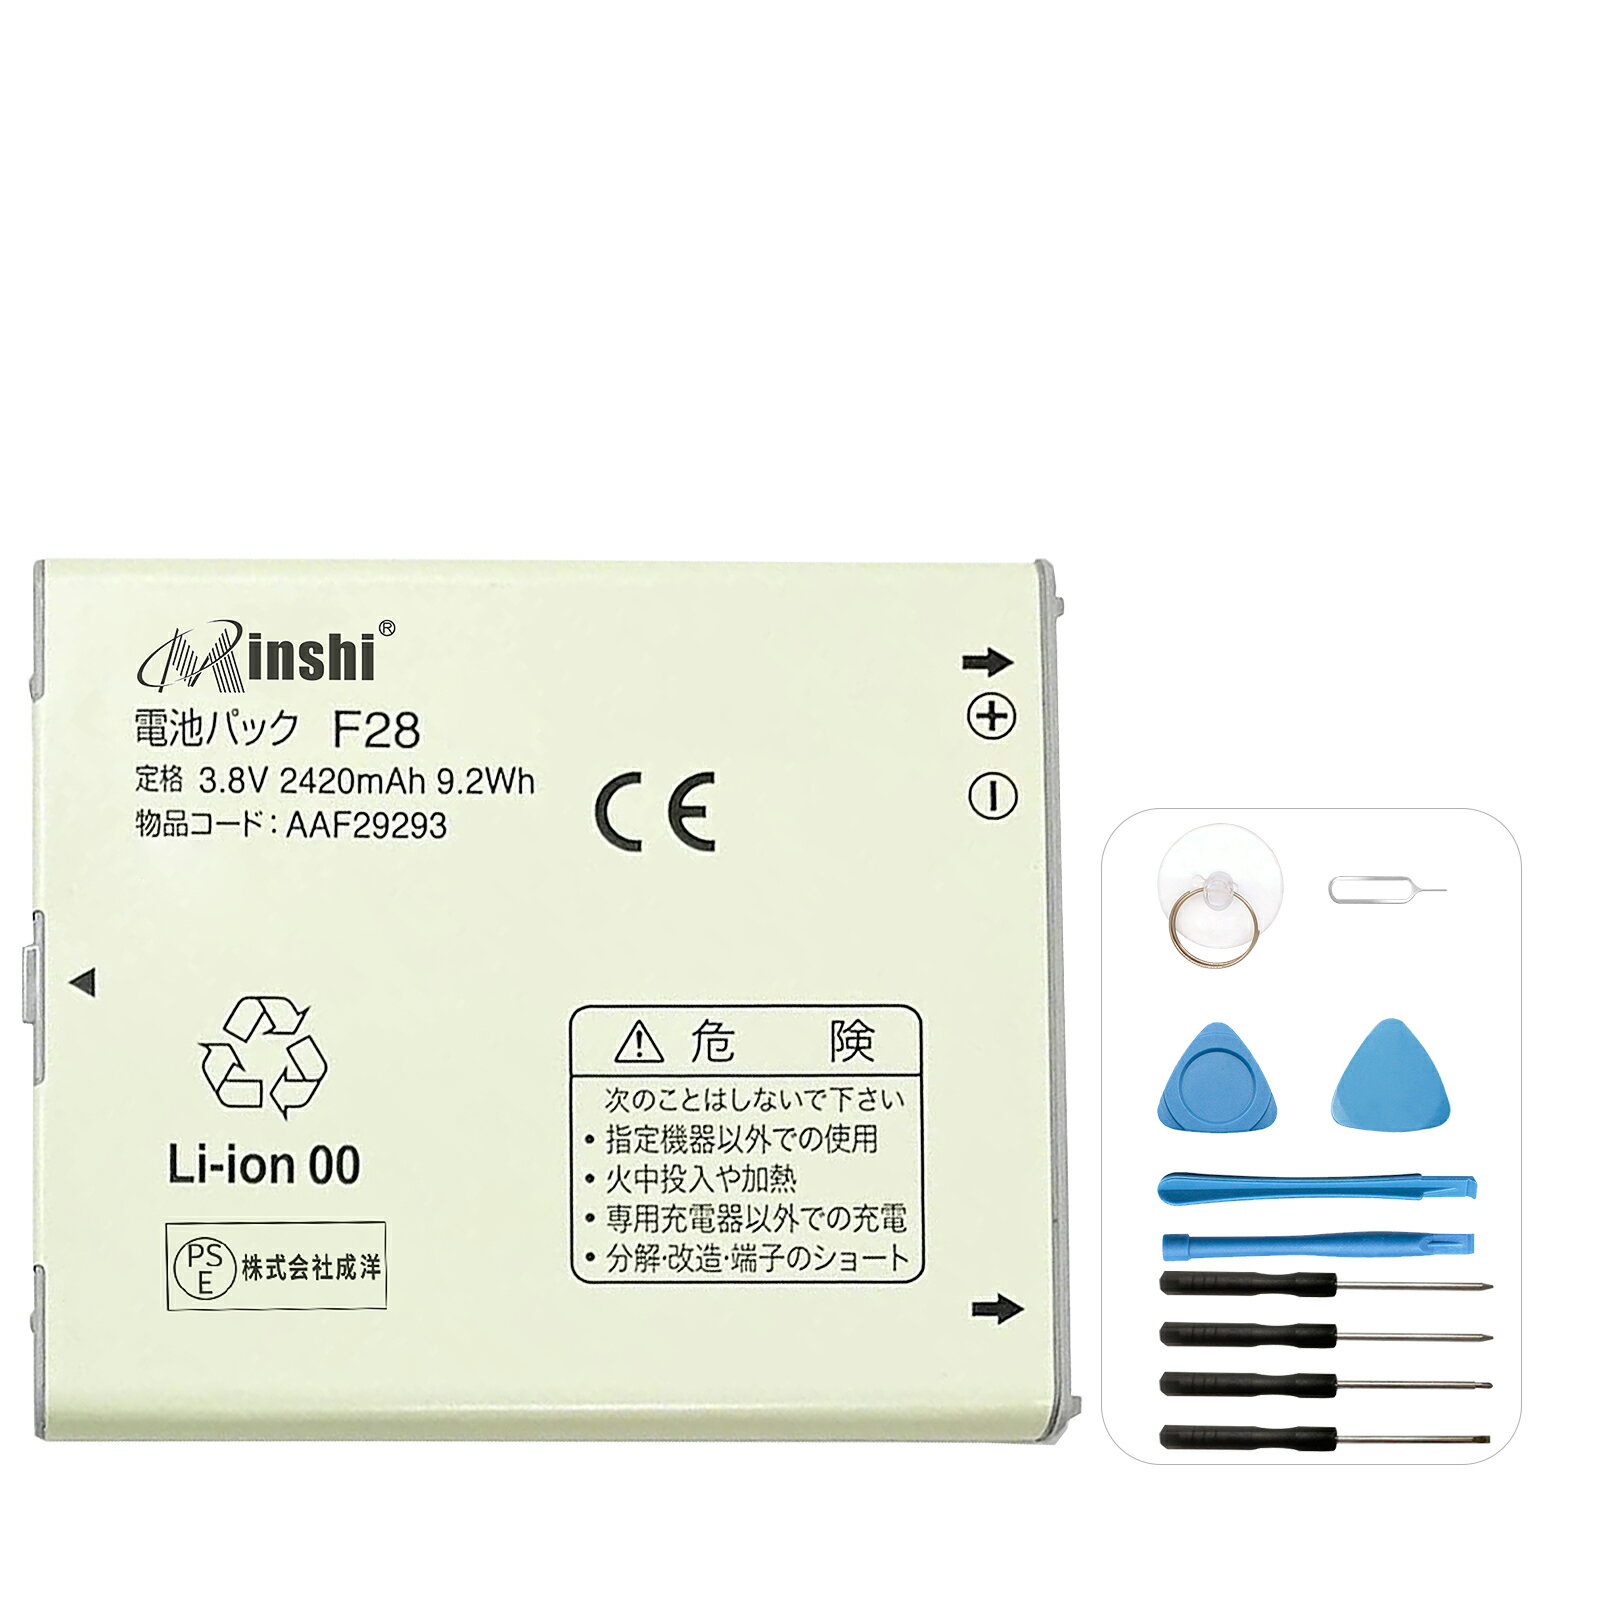 minshi 新品 Fujitsu V F-04E 互換バッテリー 高品質交換用電池パック PSE認証 工具セット 1年間保証 2420mAh